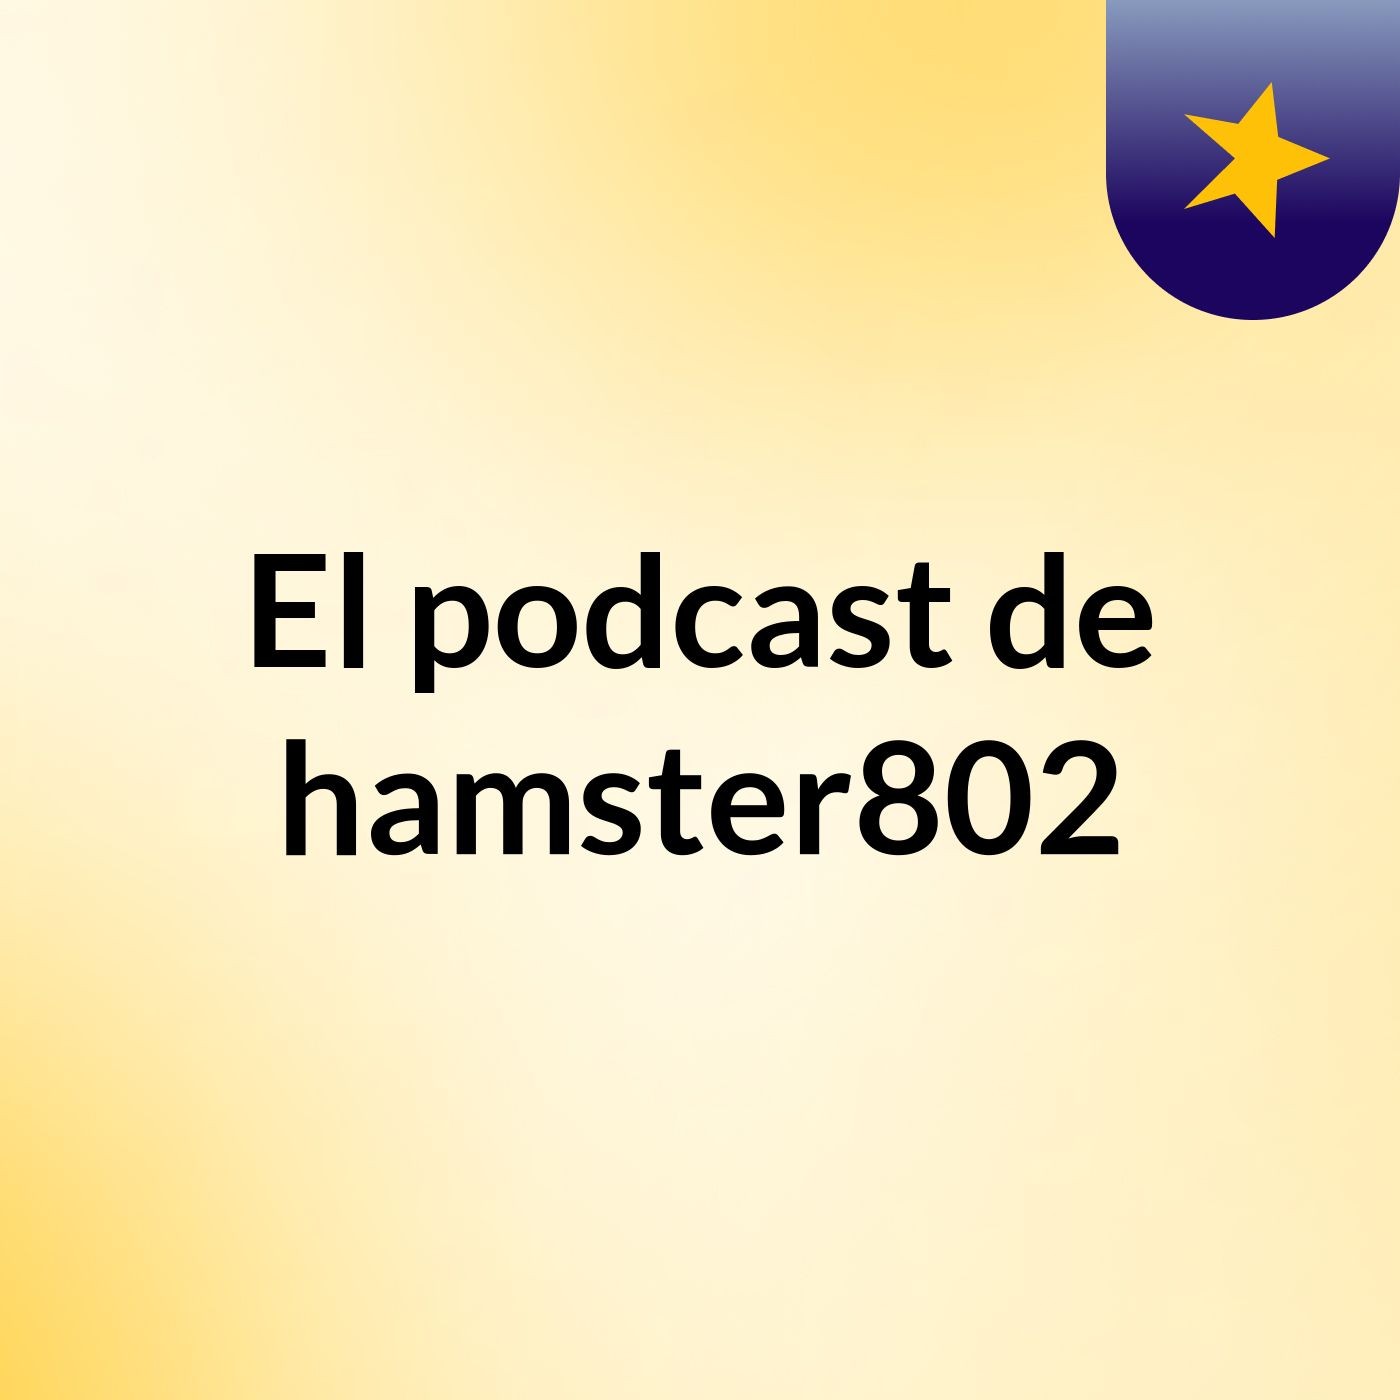 Episodio 4 - El podcast de hamster802